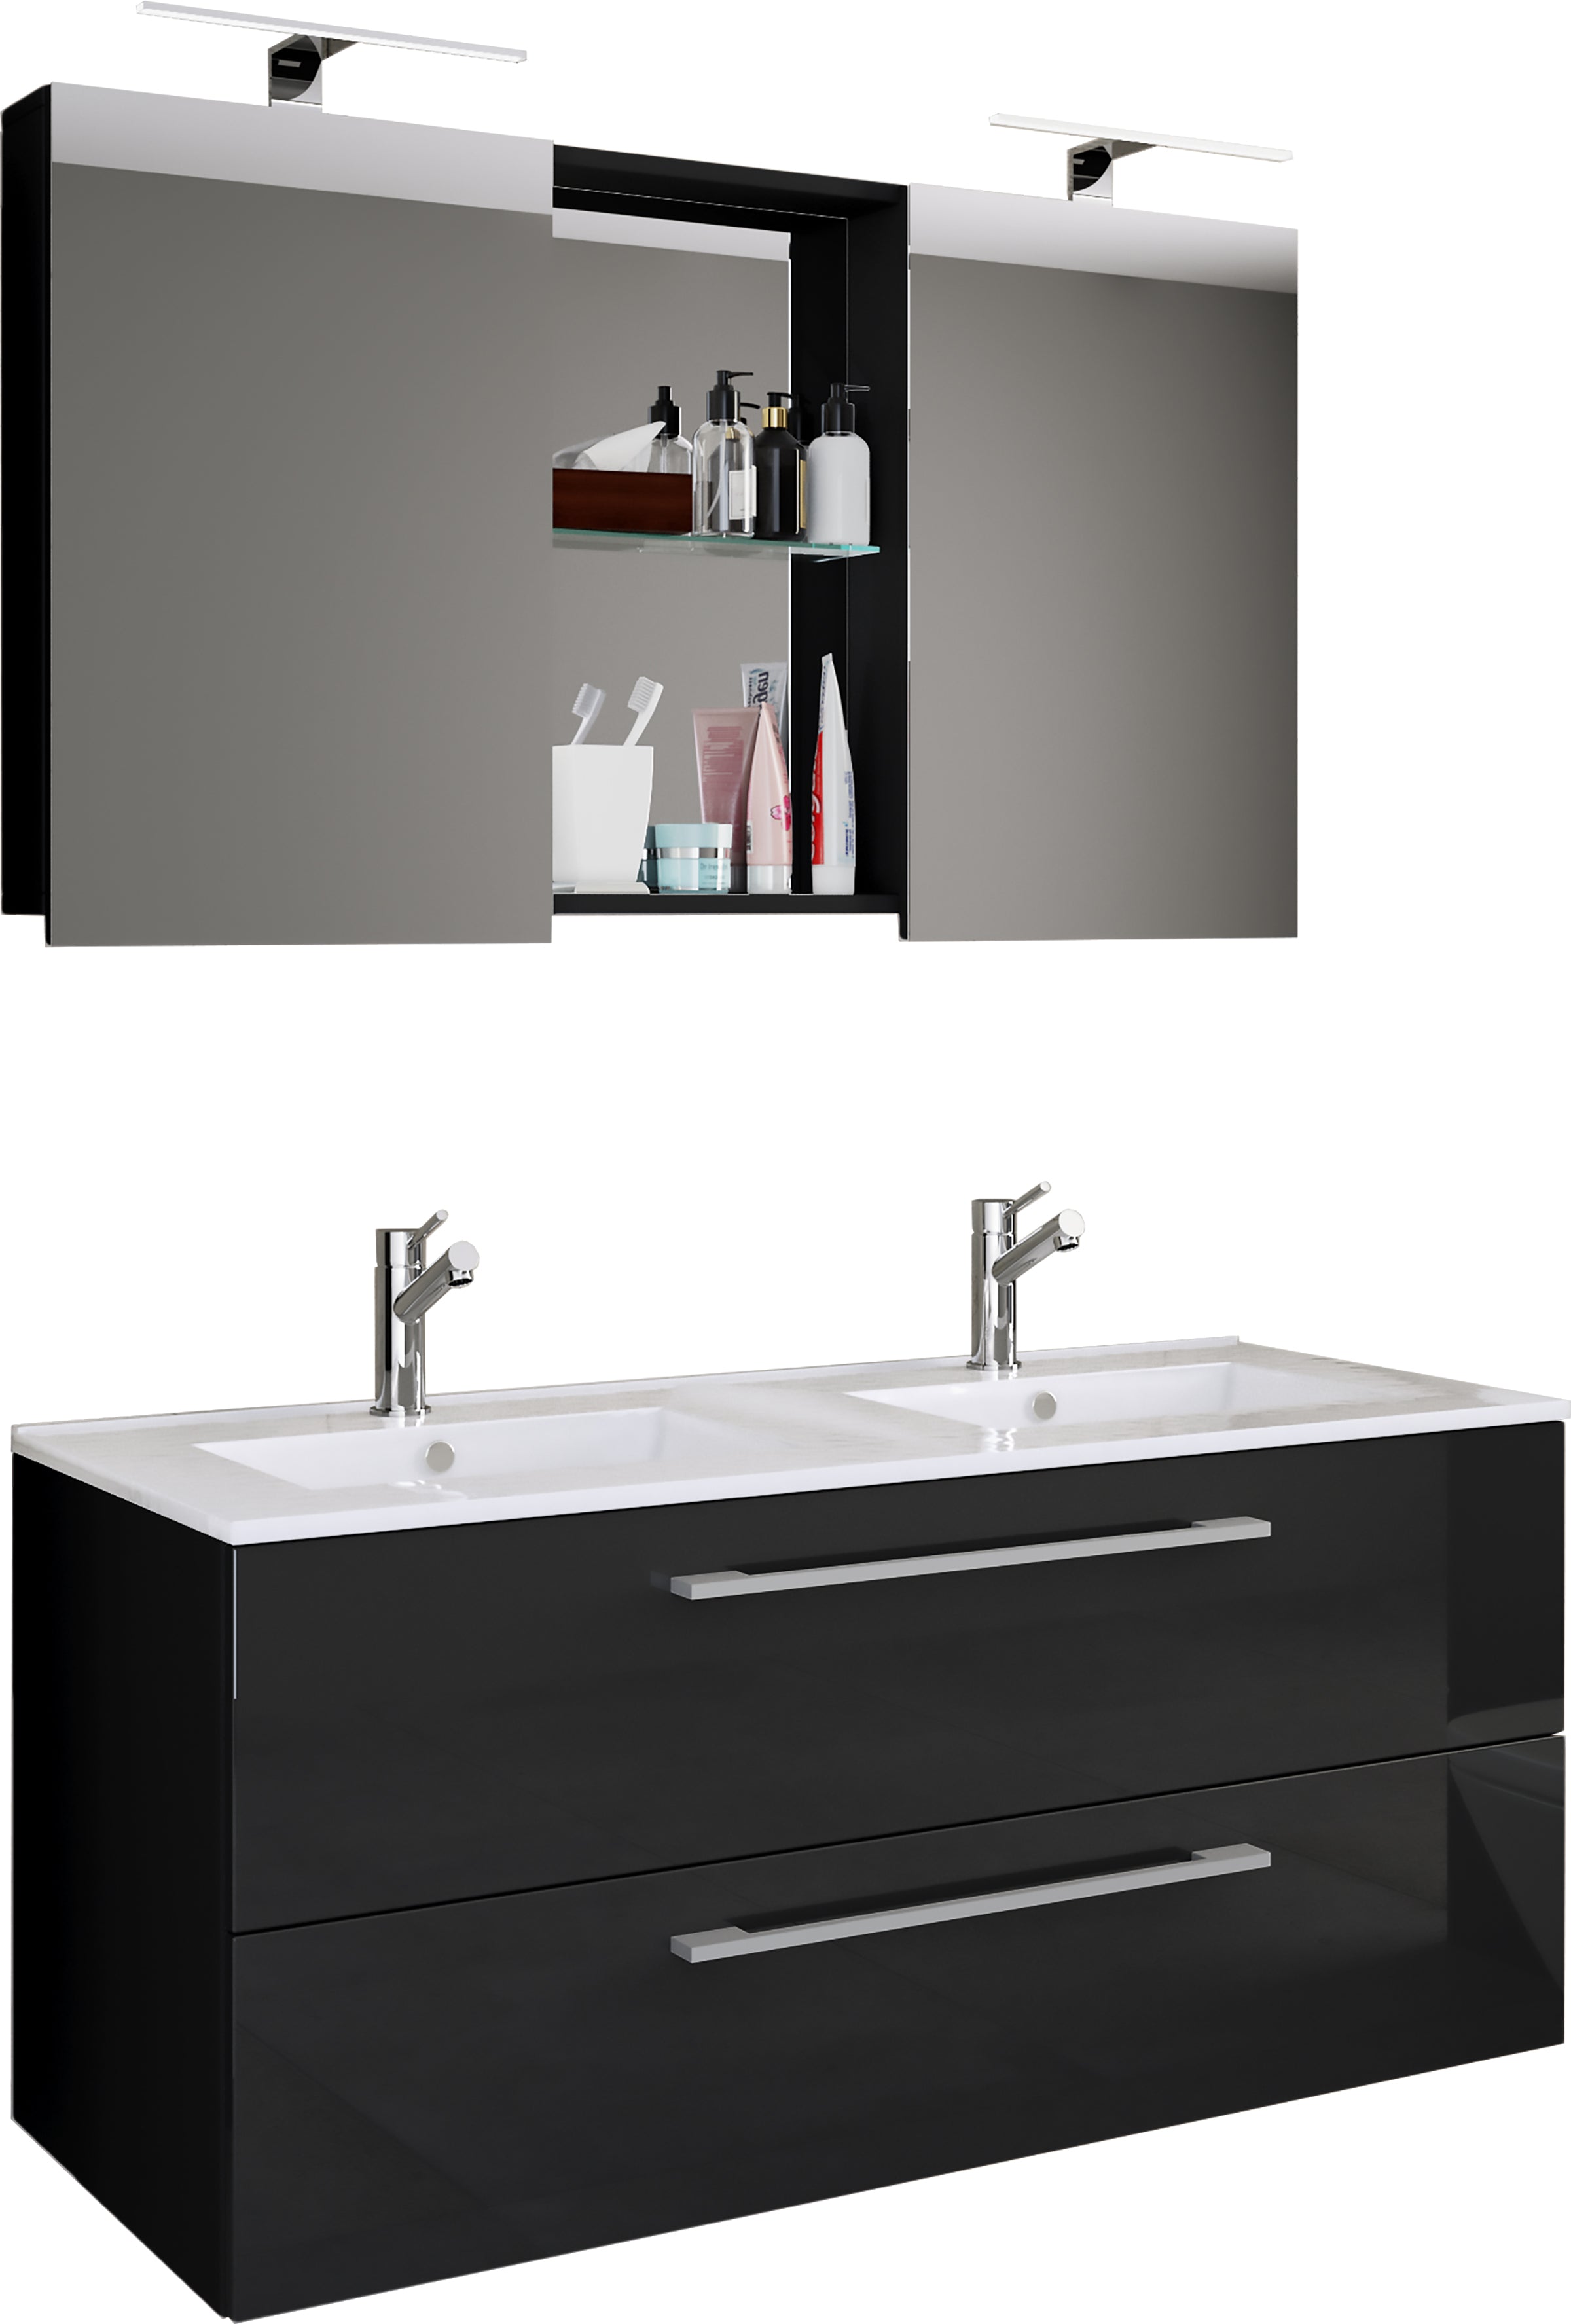 Se Underskab med keramisk vask og spejl, h. 51 x b. 111 x d. 46 cm, sort hos Lammeuld.dk